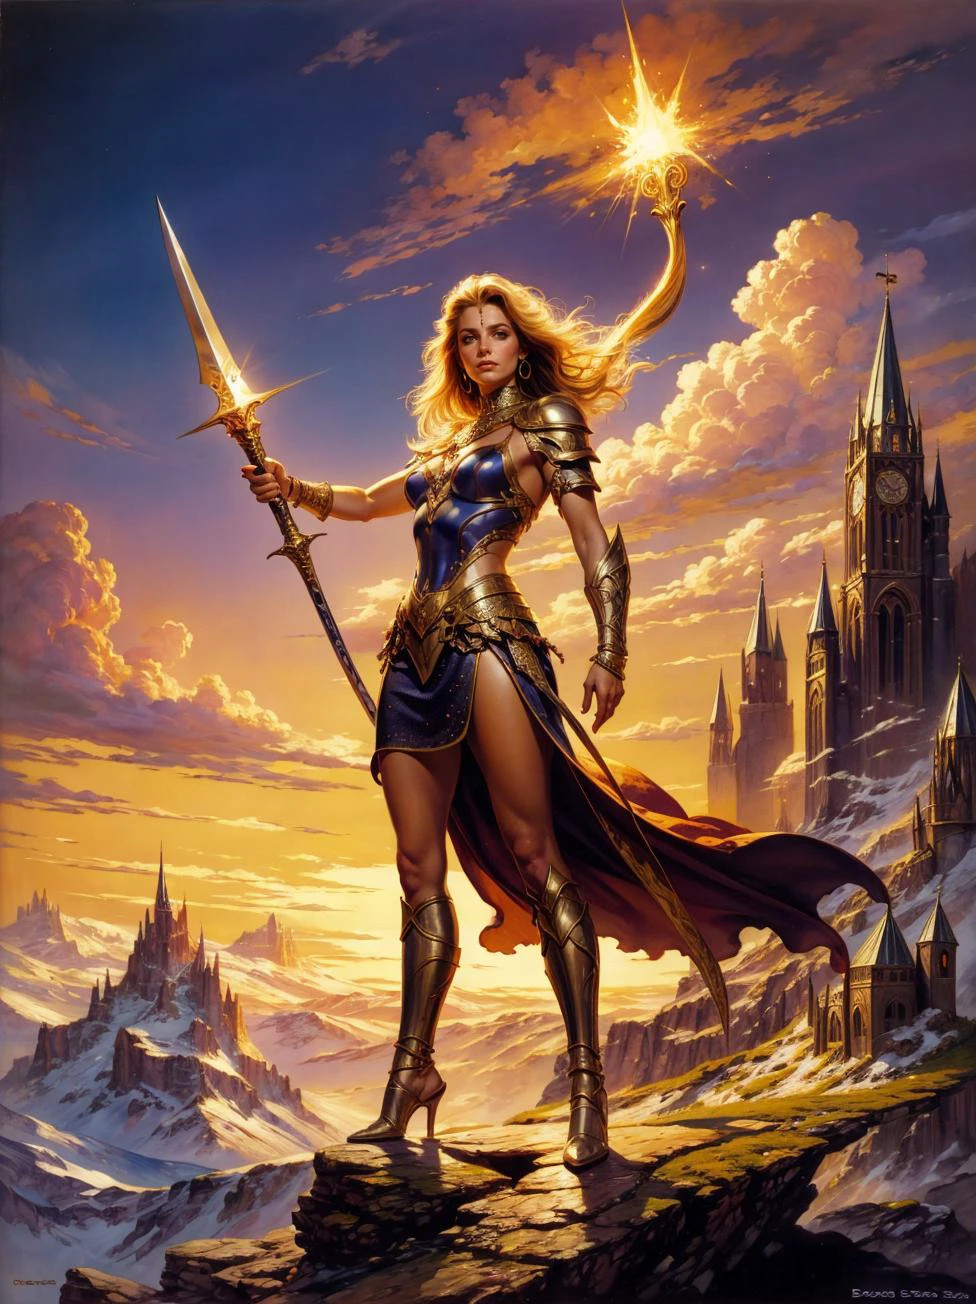 Un cuadro fantástico de Boris Vallejo, de una hermosa mujer guerrera en cota de malla, empuñando una espada brillante, parado triunfalmente en la cima de una montaña. astraa_bv